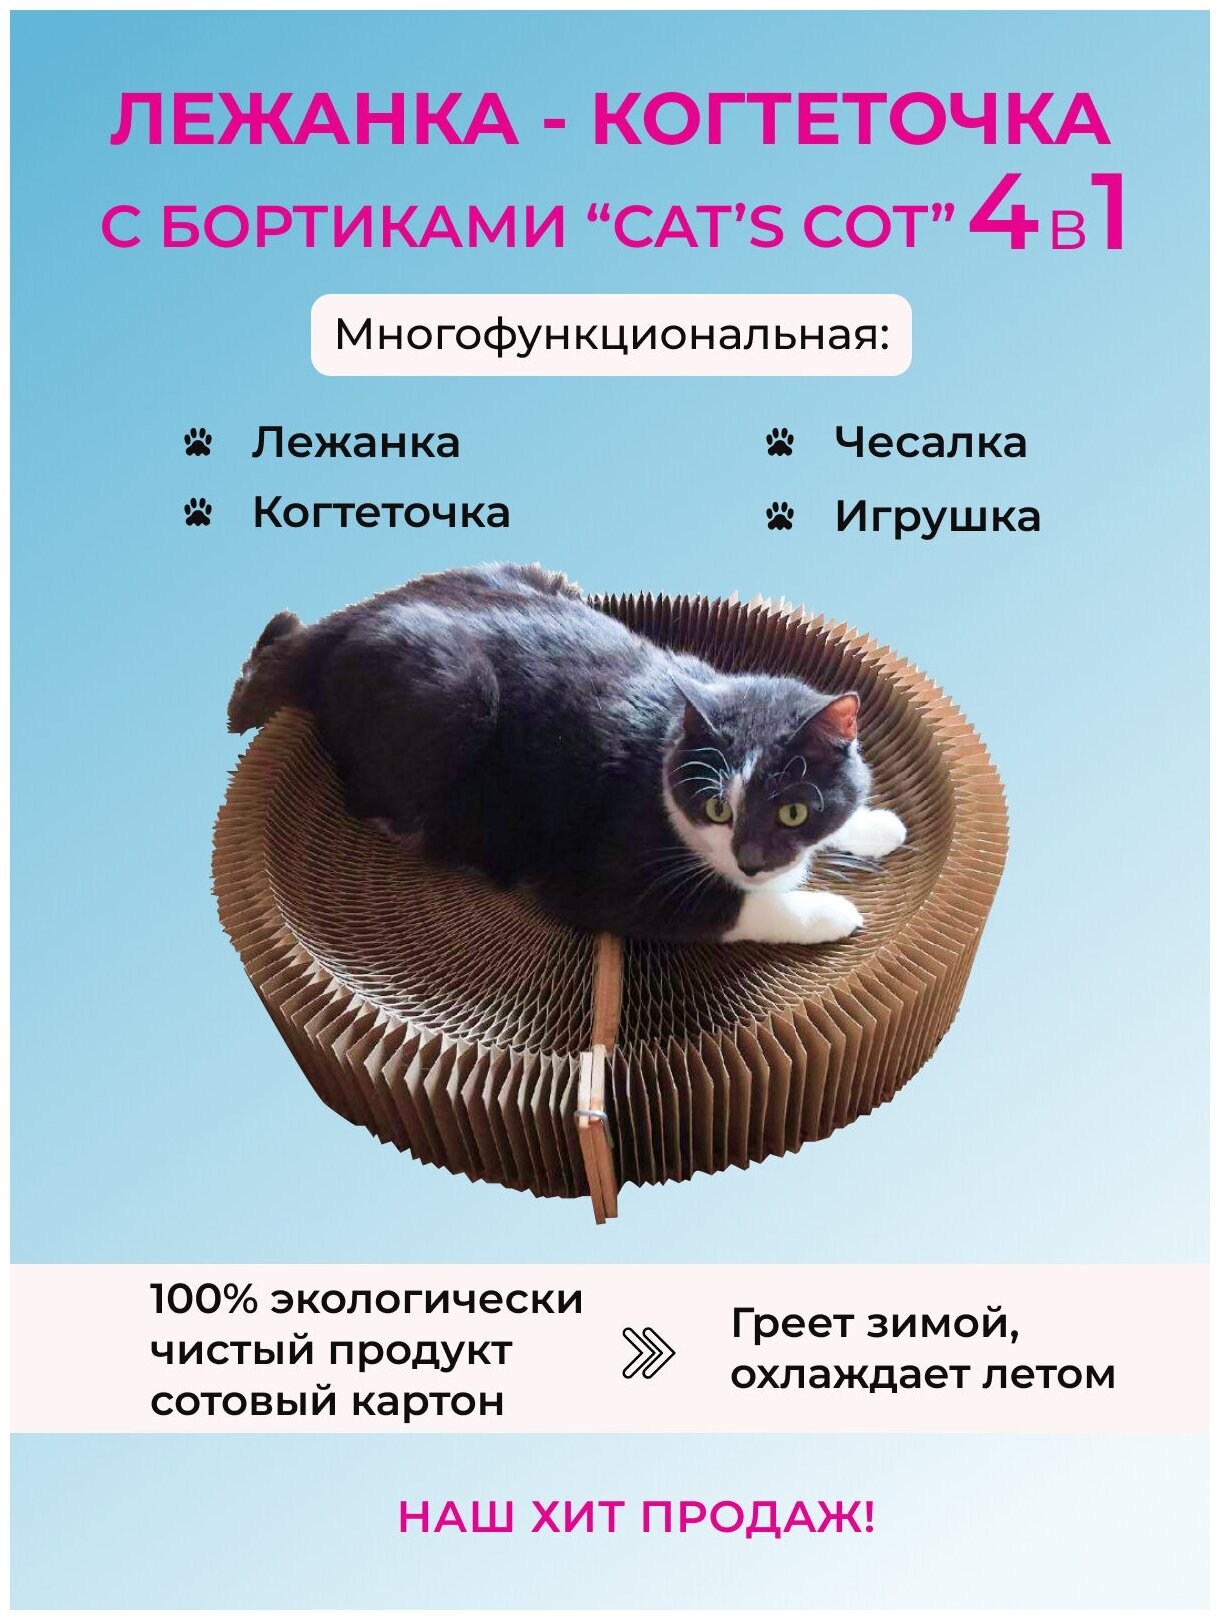 Лежанка-когтеточка "Cat's cot" с бортиком (2 по цене 1) - фотография № 1